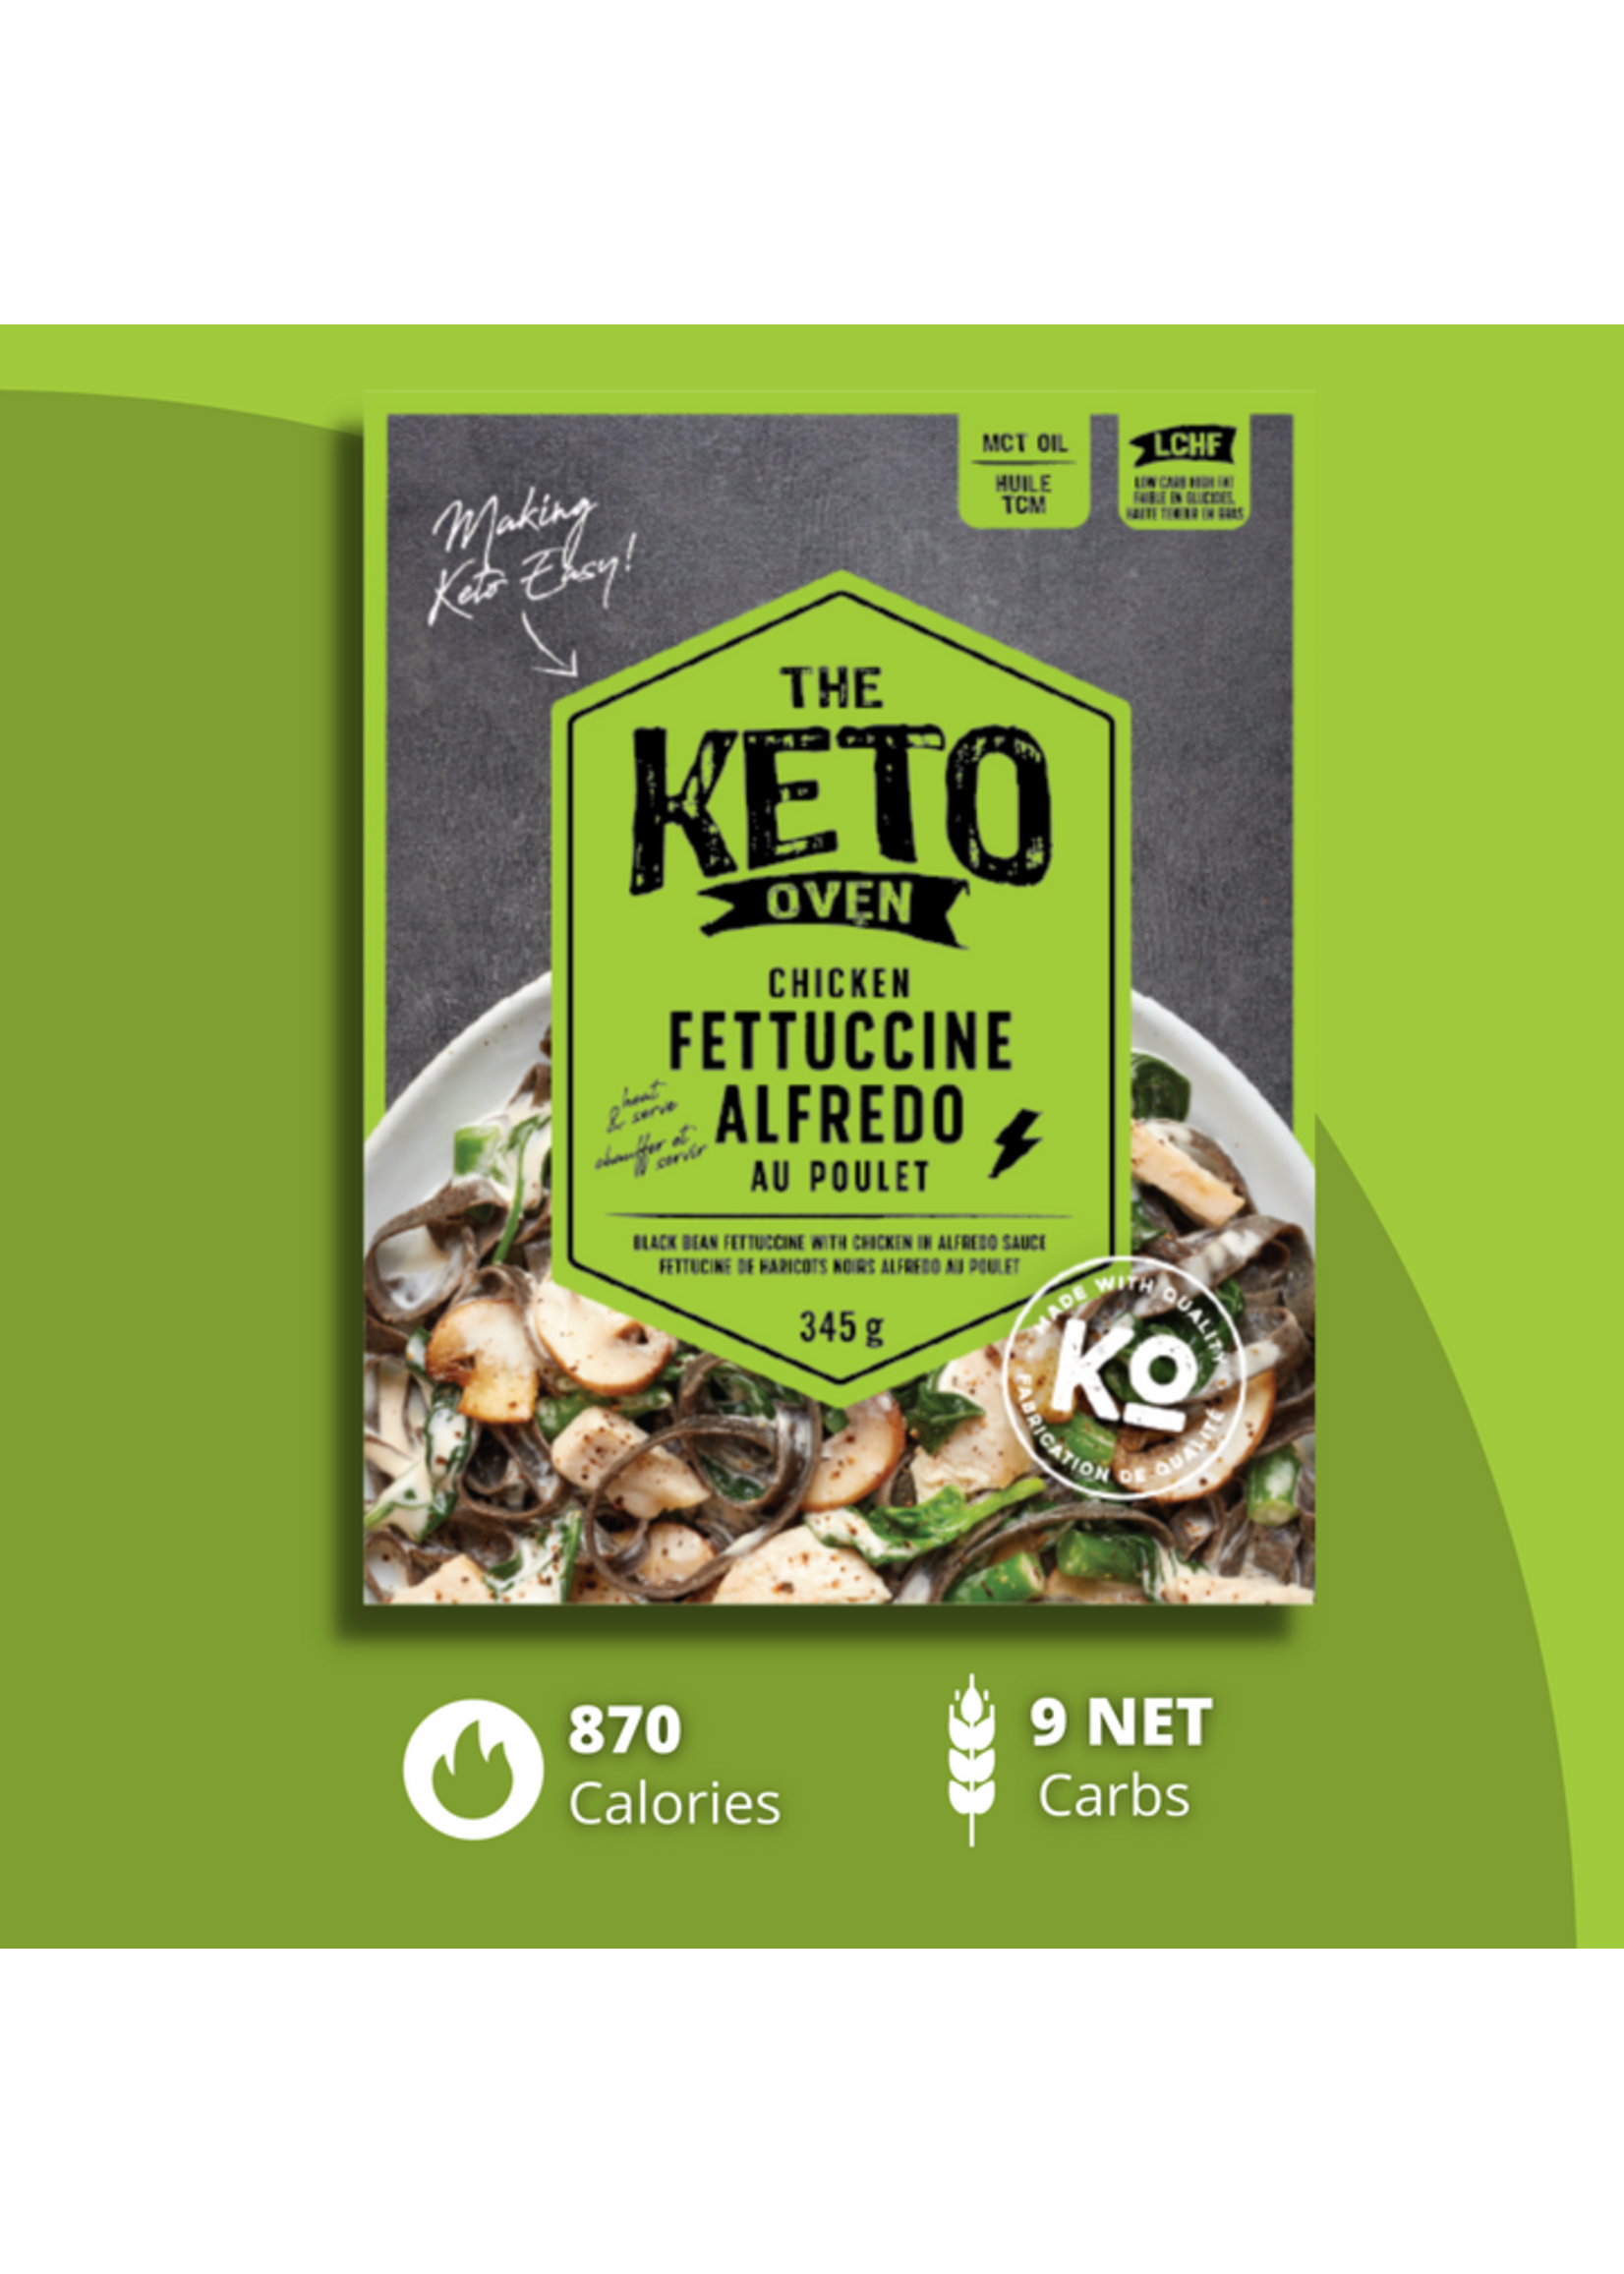 The Keto Oven The Keto Oven - Keto Meals, Chicken Fettuccine Alfredo